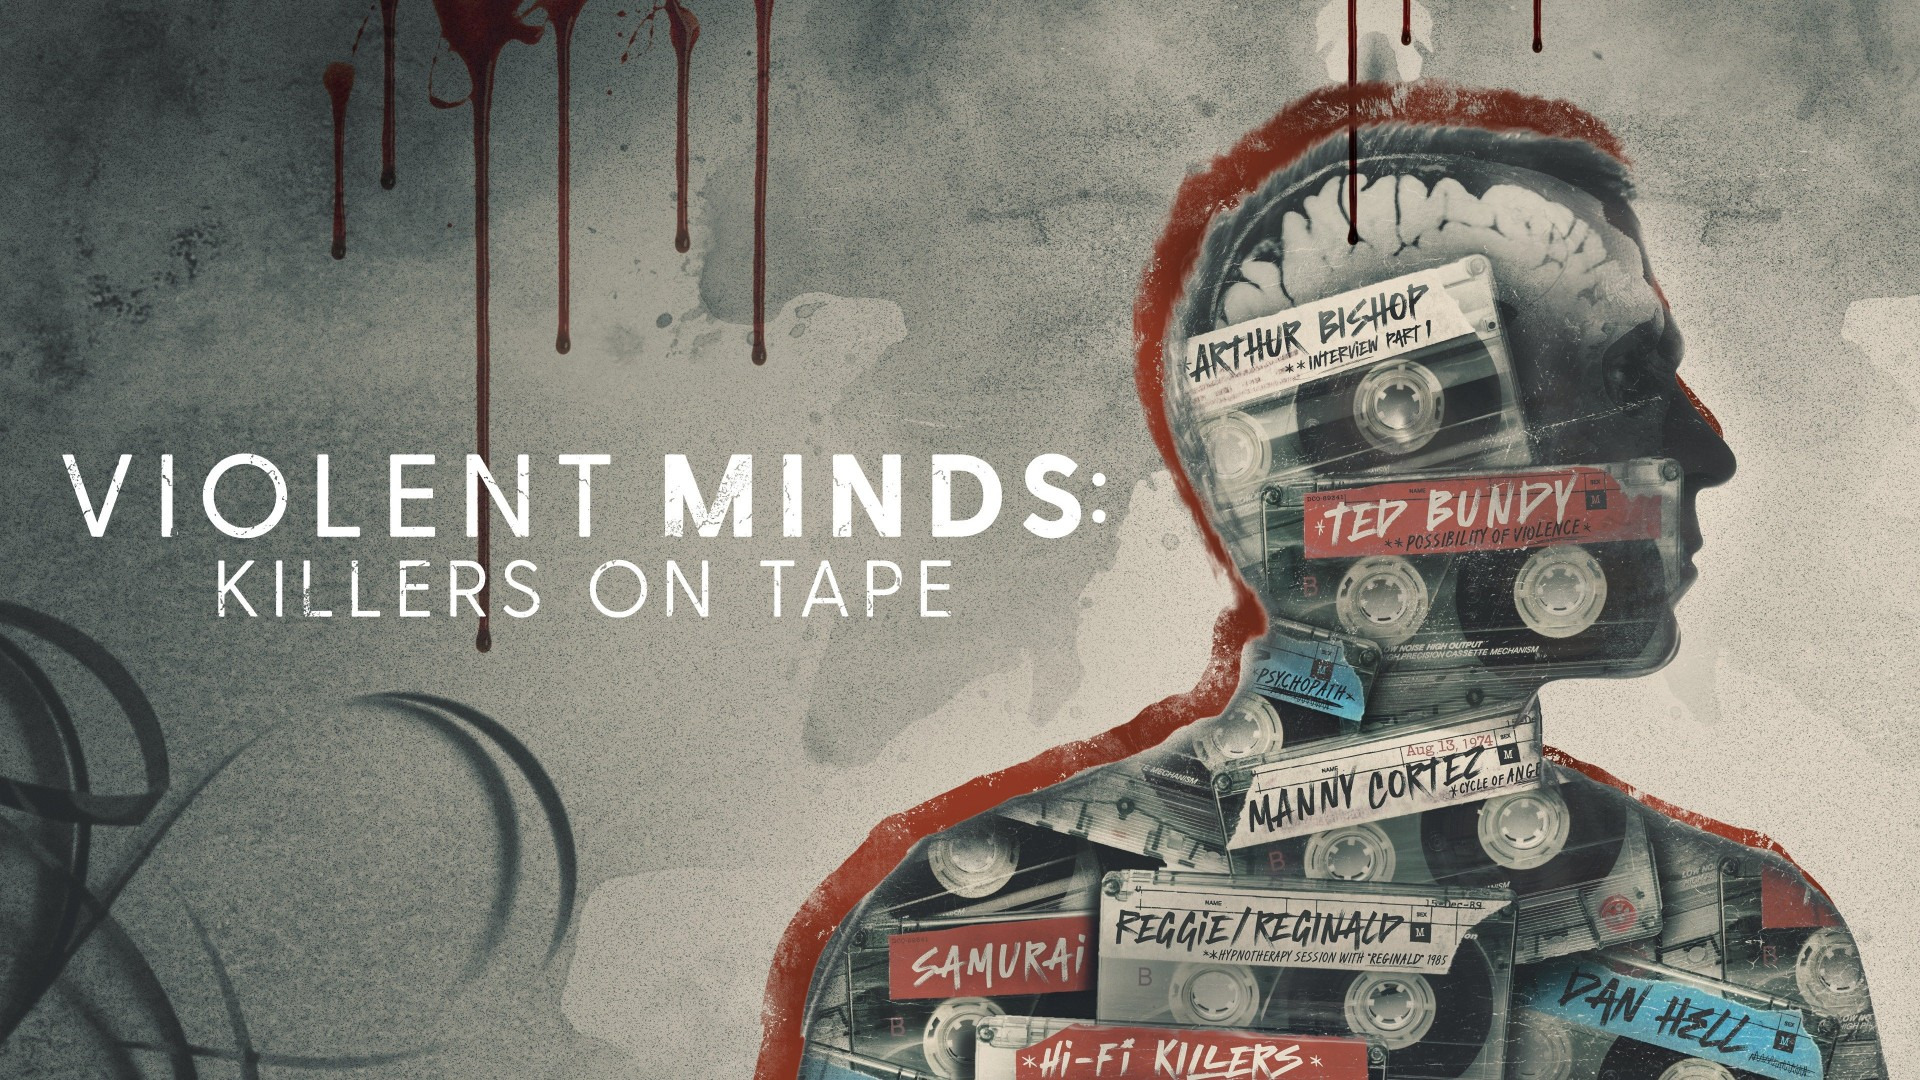 Show Violent Minds: Killers on Tape